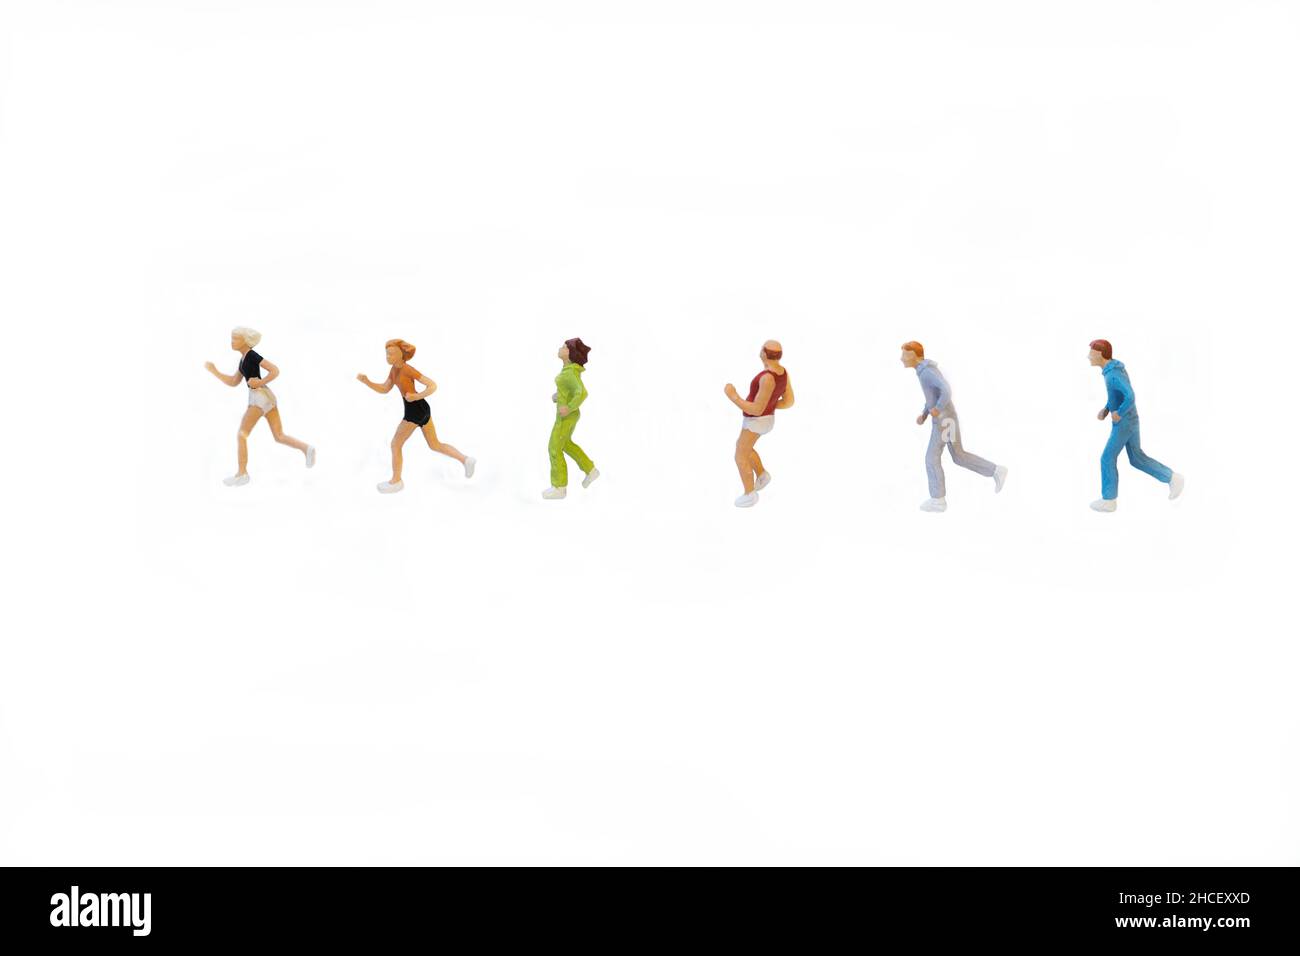 Groupe de jogging miniature à la suite tout en courant sur fond blanc Banque D'Images